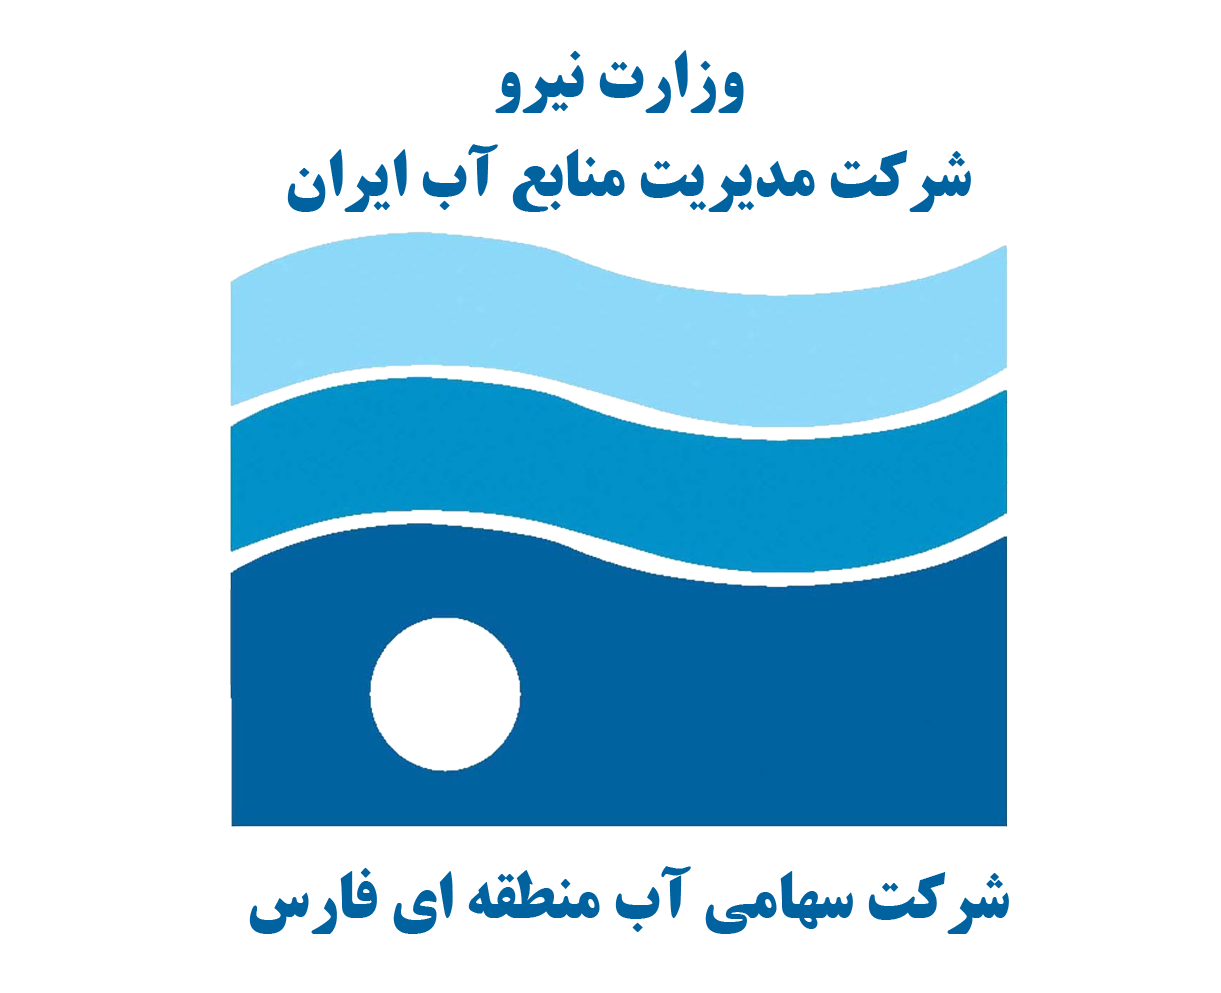 تعیین و محاسبه شاخص اختصاصی کیفیت آب با رویکرد تصمیم گیری چند معیاره گروهی فازی، مطالعه موردی چاه های آب شرب شهر شیراز